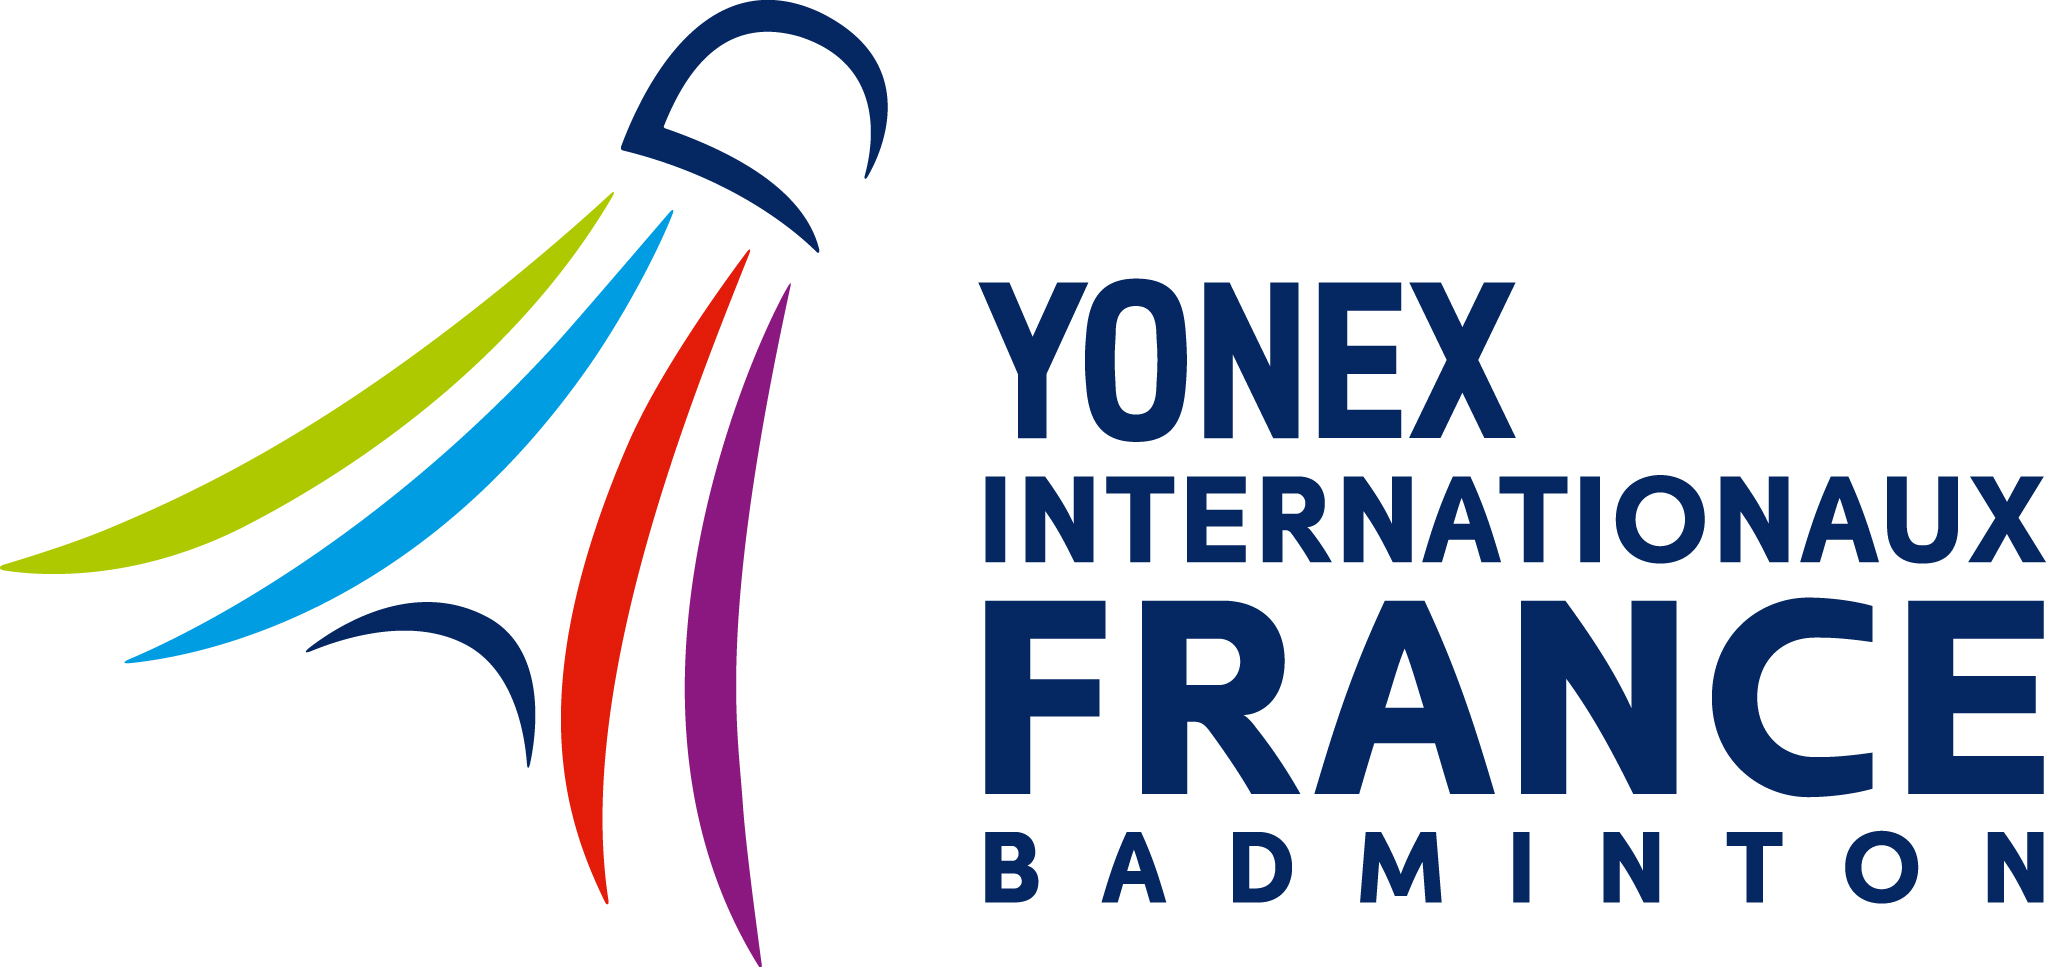 French Open (badminton) Alchetron, the free social encyclopedia